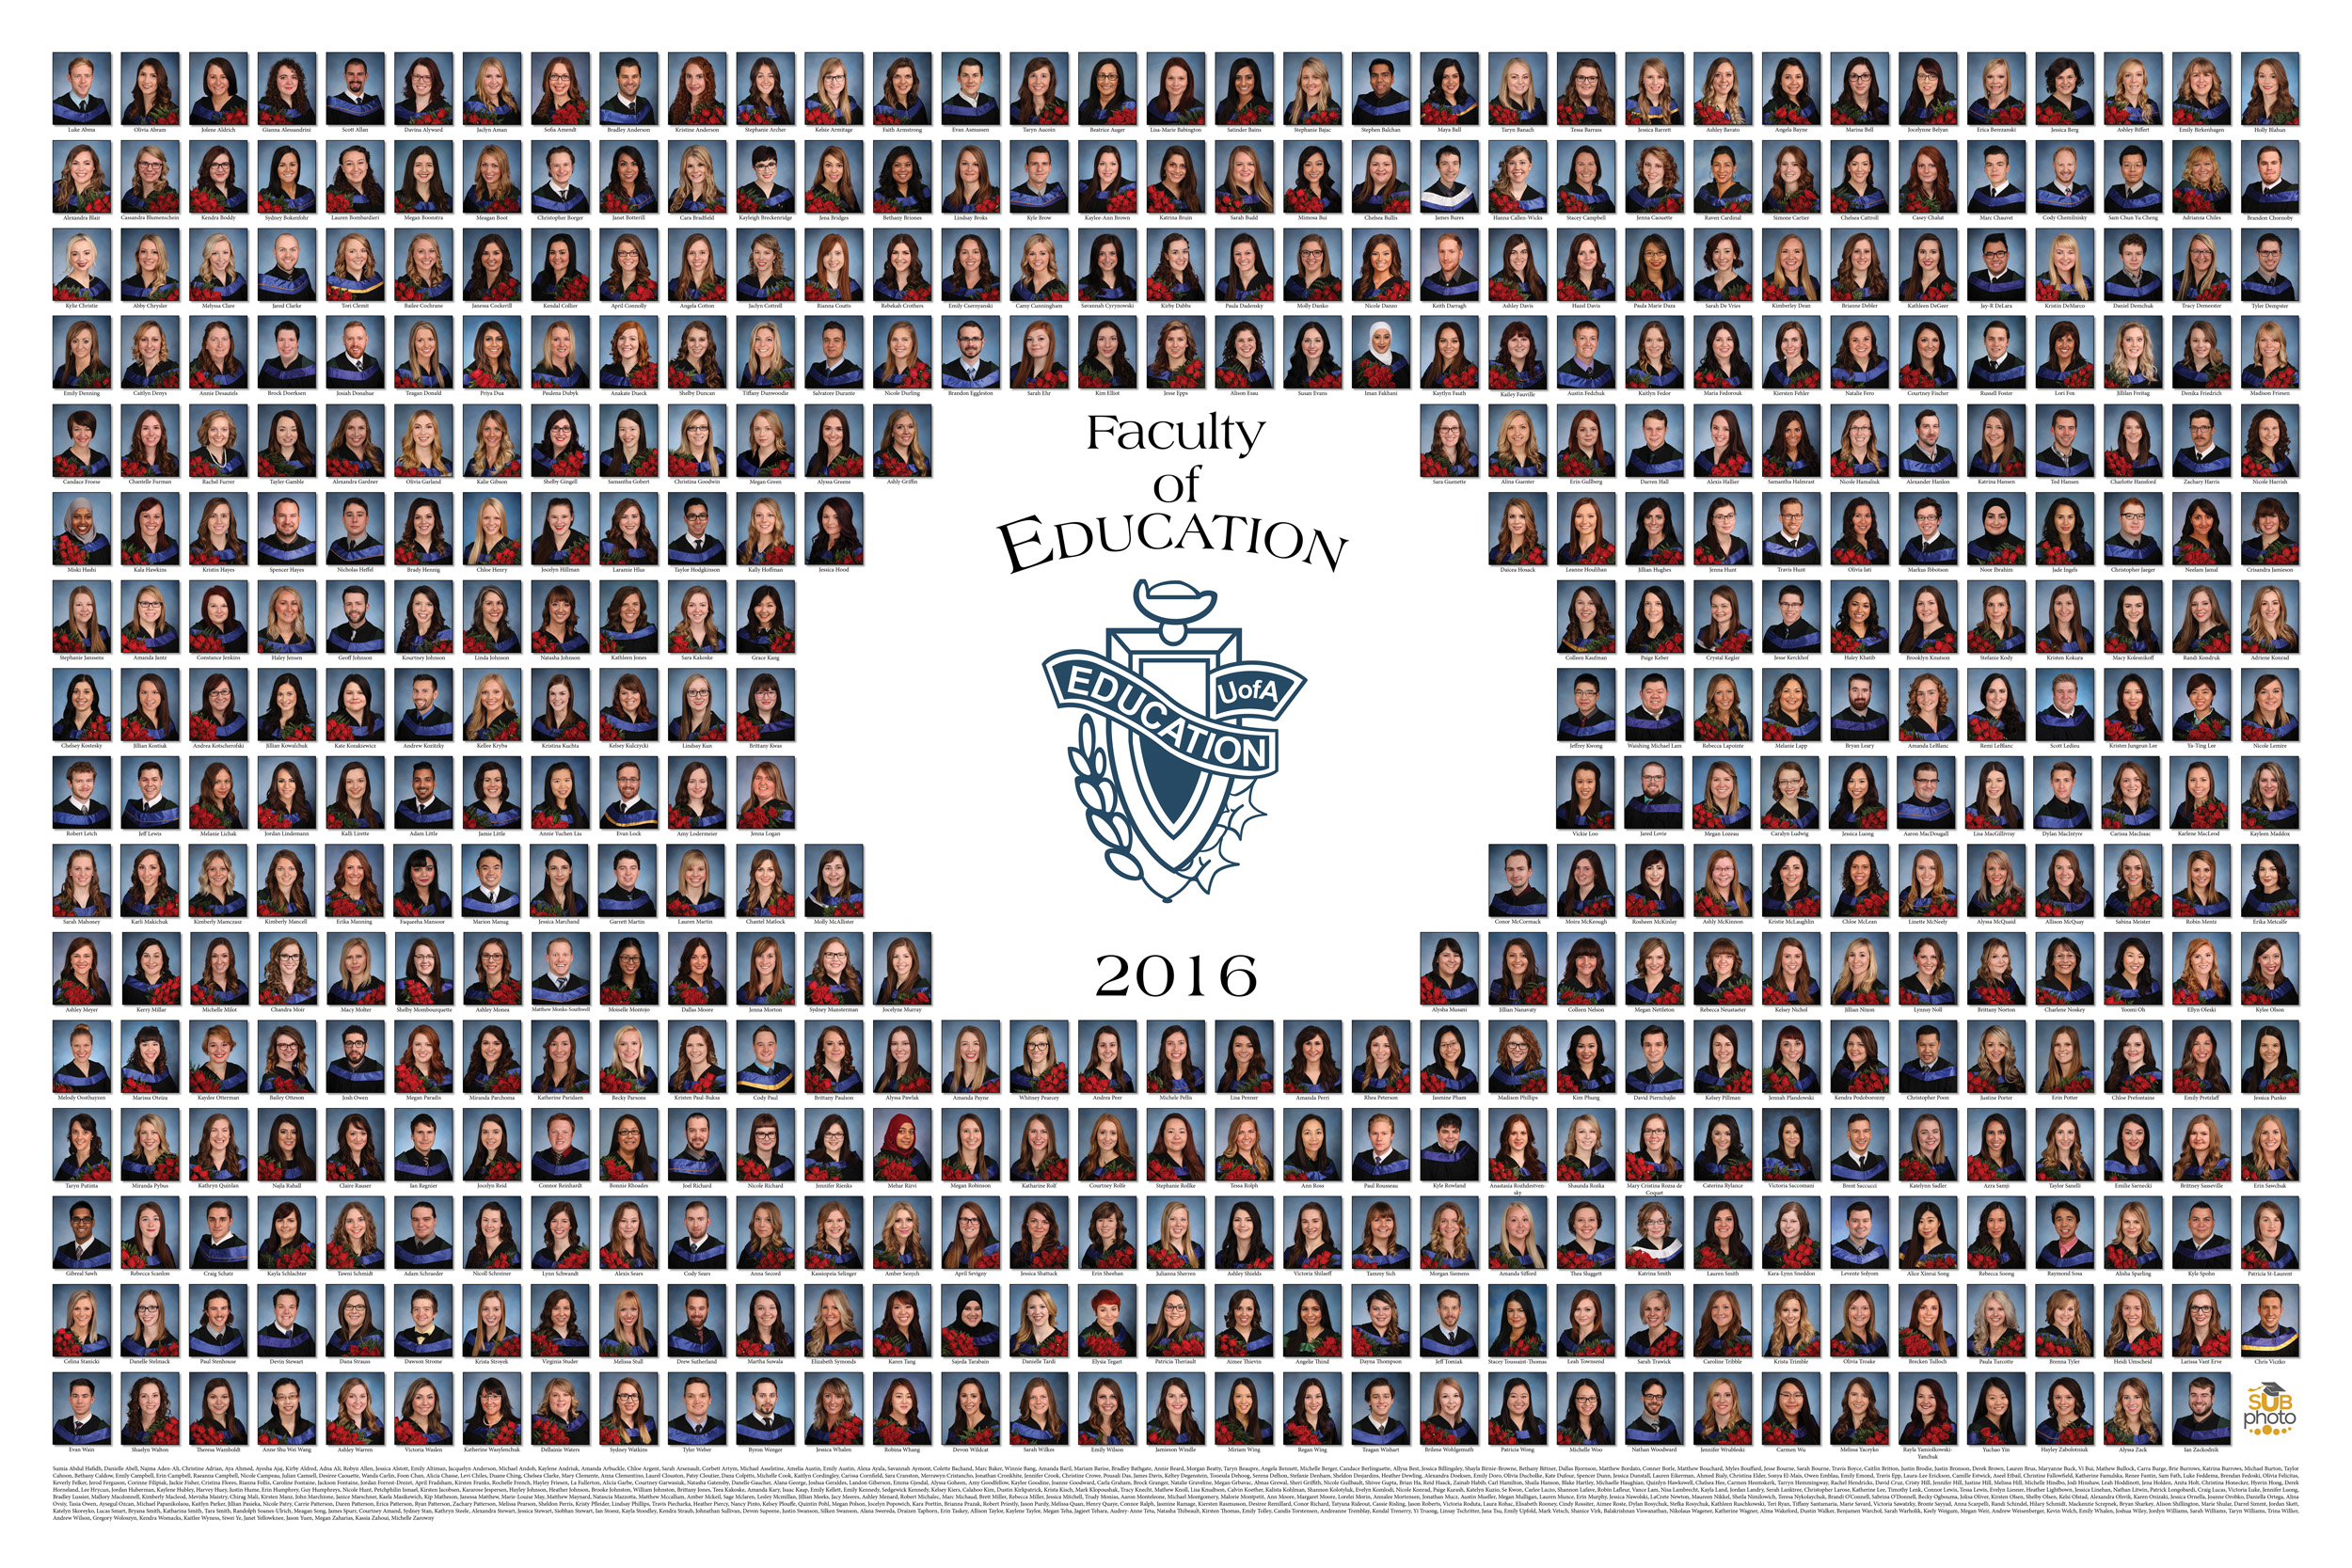 Education 2016 Graduation Photo Composite